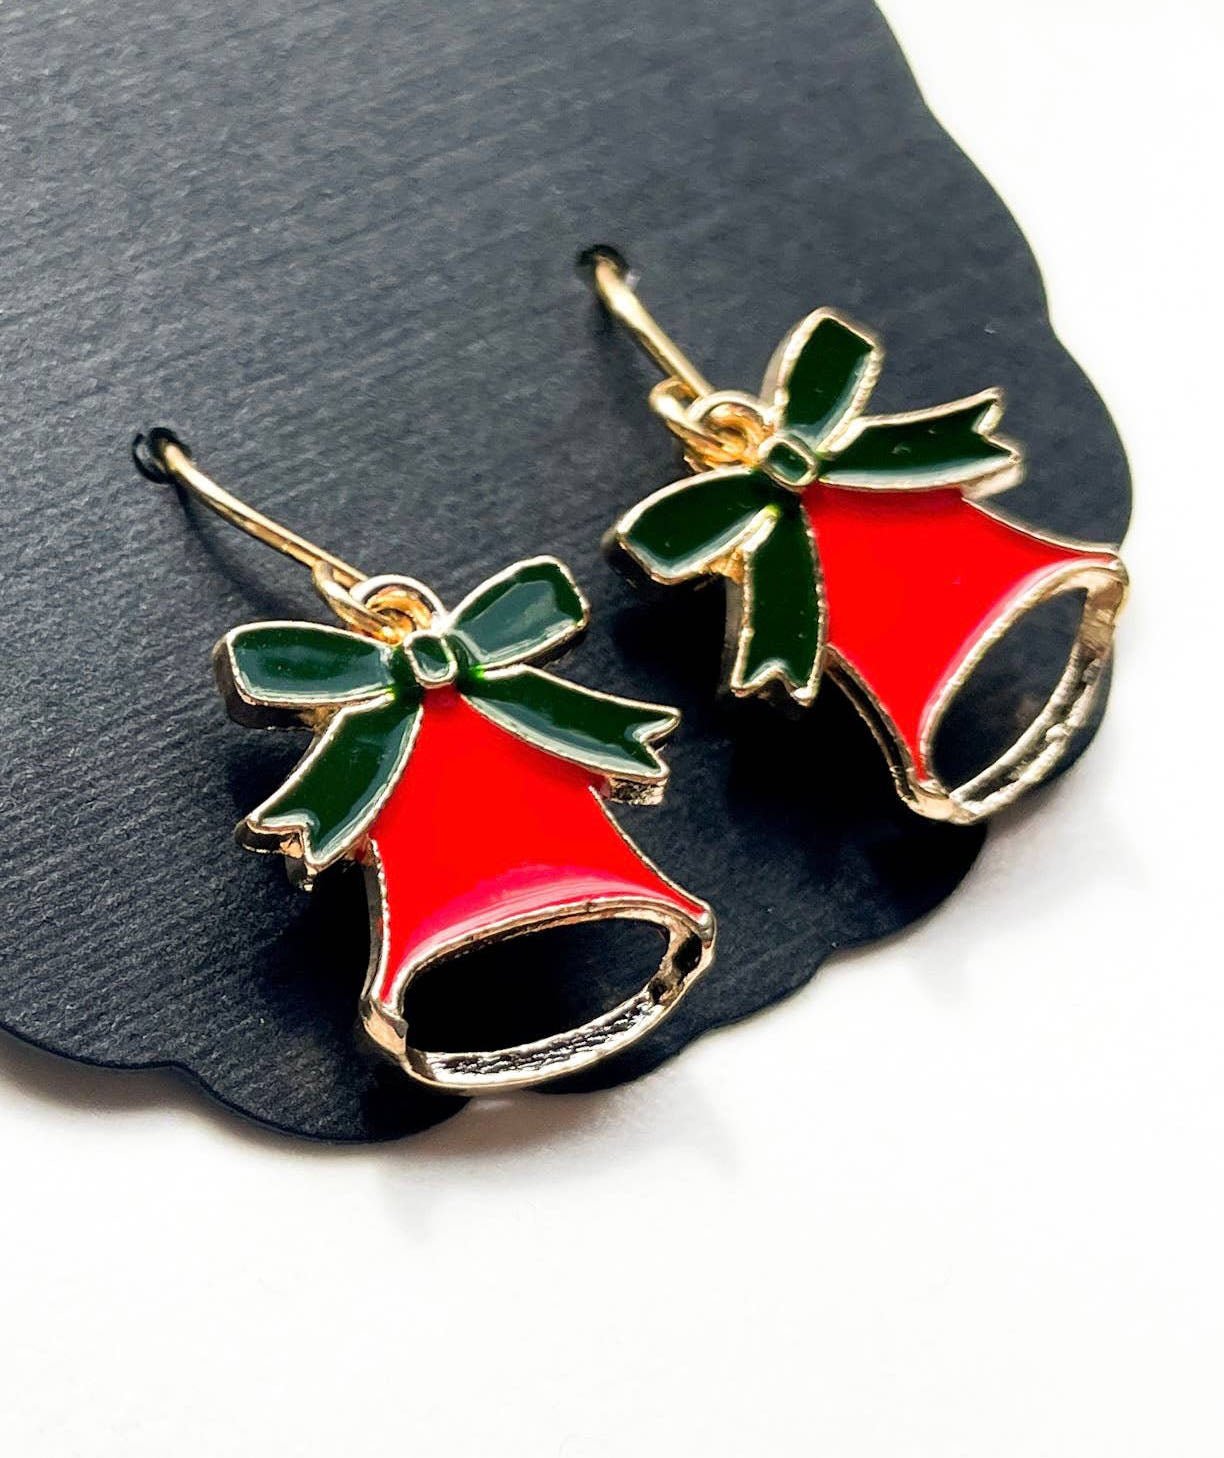 Jingle bell earrings for christmas